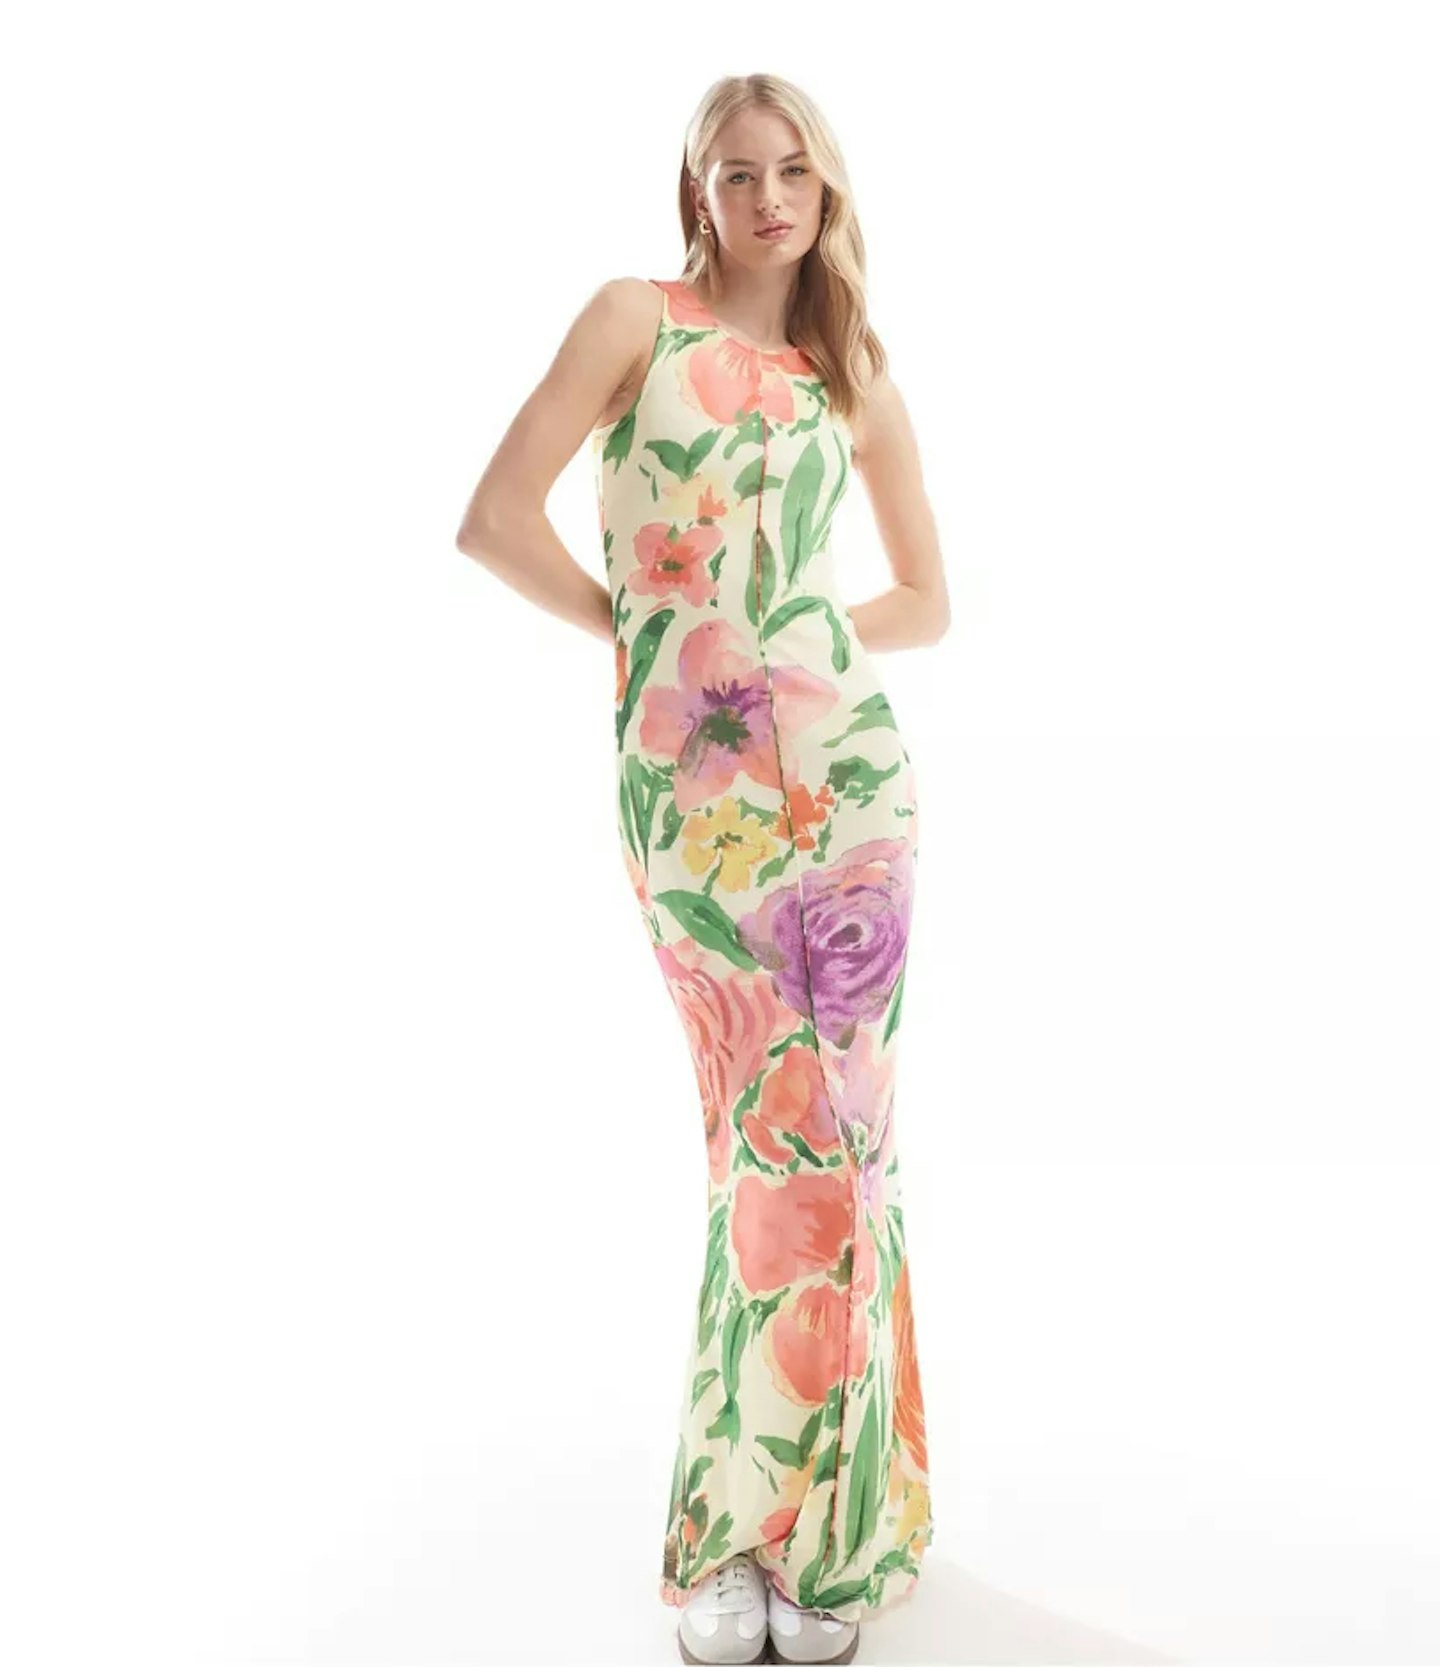 Vero Moda Tall Sleeveless Lettuce Edge Mesh Dress in Summer Floral Print